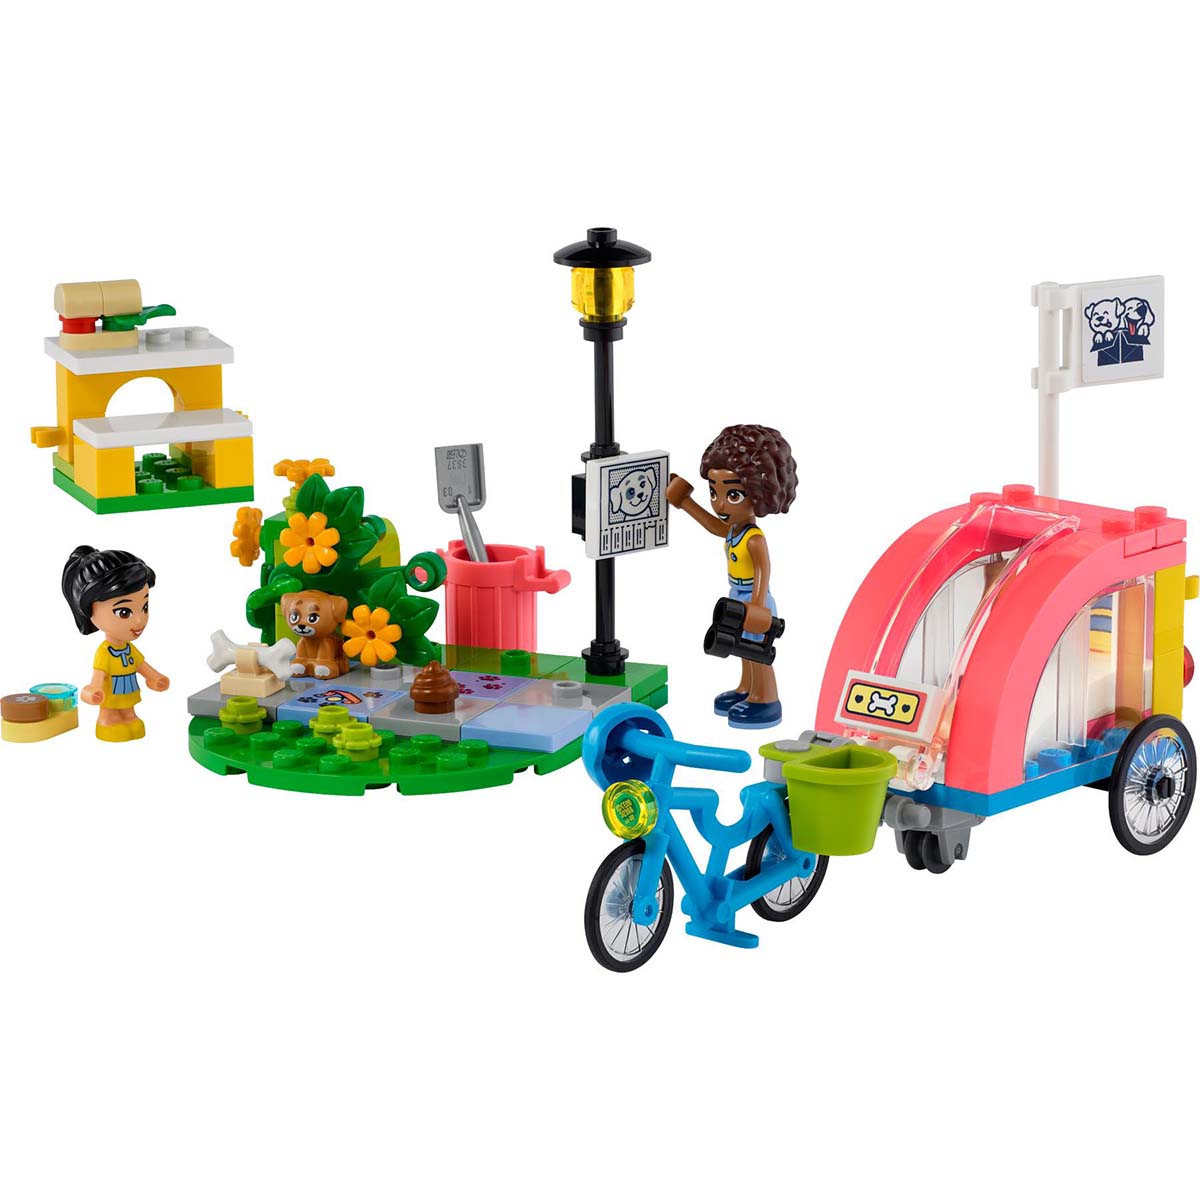 LEGO(R) Friends(R) Dog Rescue Bike Building Toy